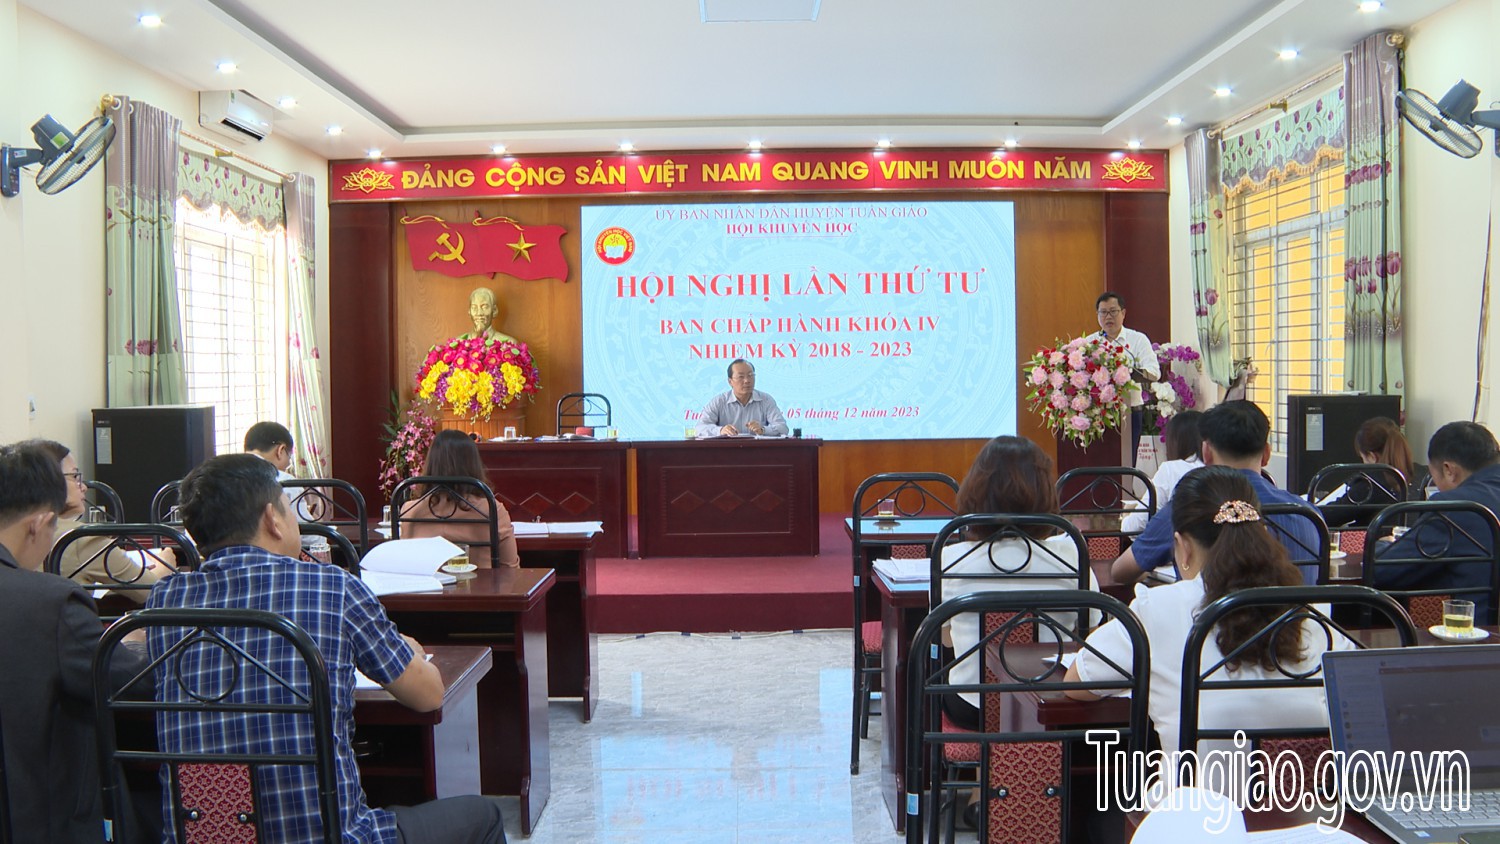 Hội khuyến học huyện tổ chức Hội nghị lần thứ tư BCH khoá IV nhiệm kỳ 2018-2023